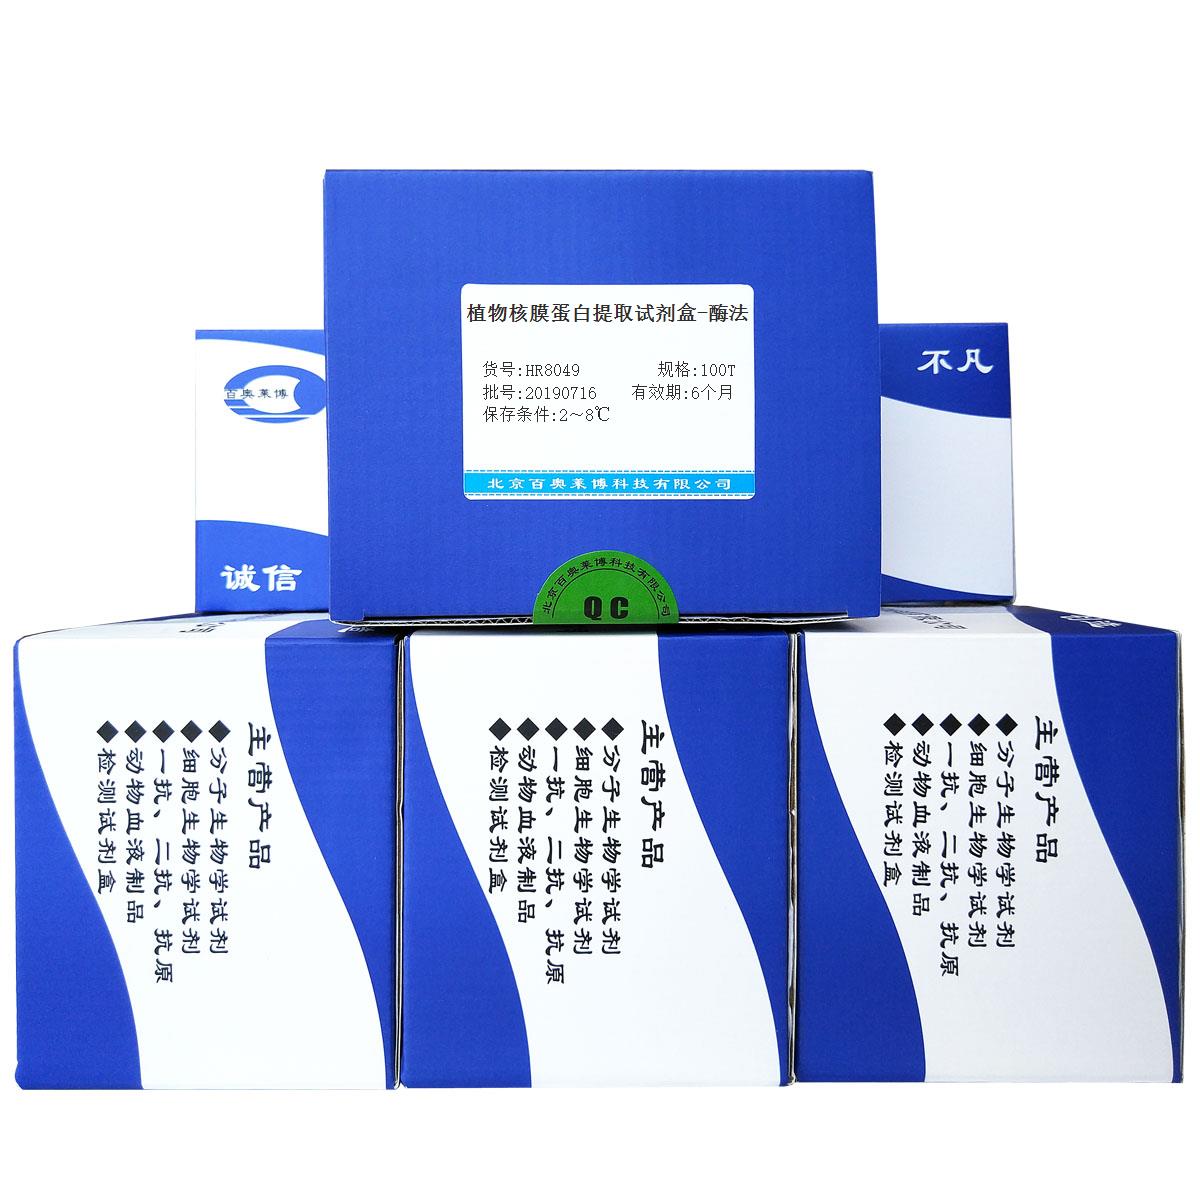 植物核膜蛋白提取试剂盒-酶法北京品牌